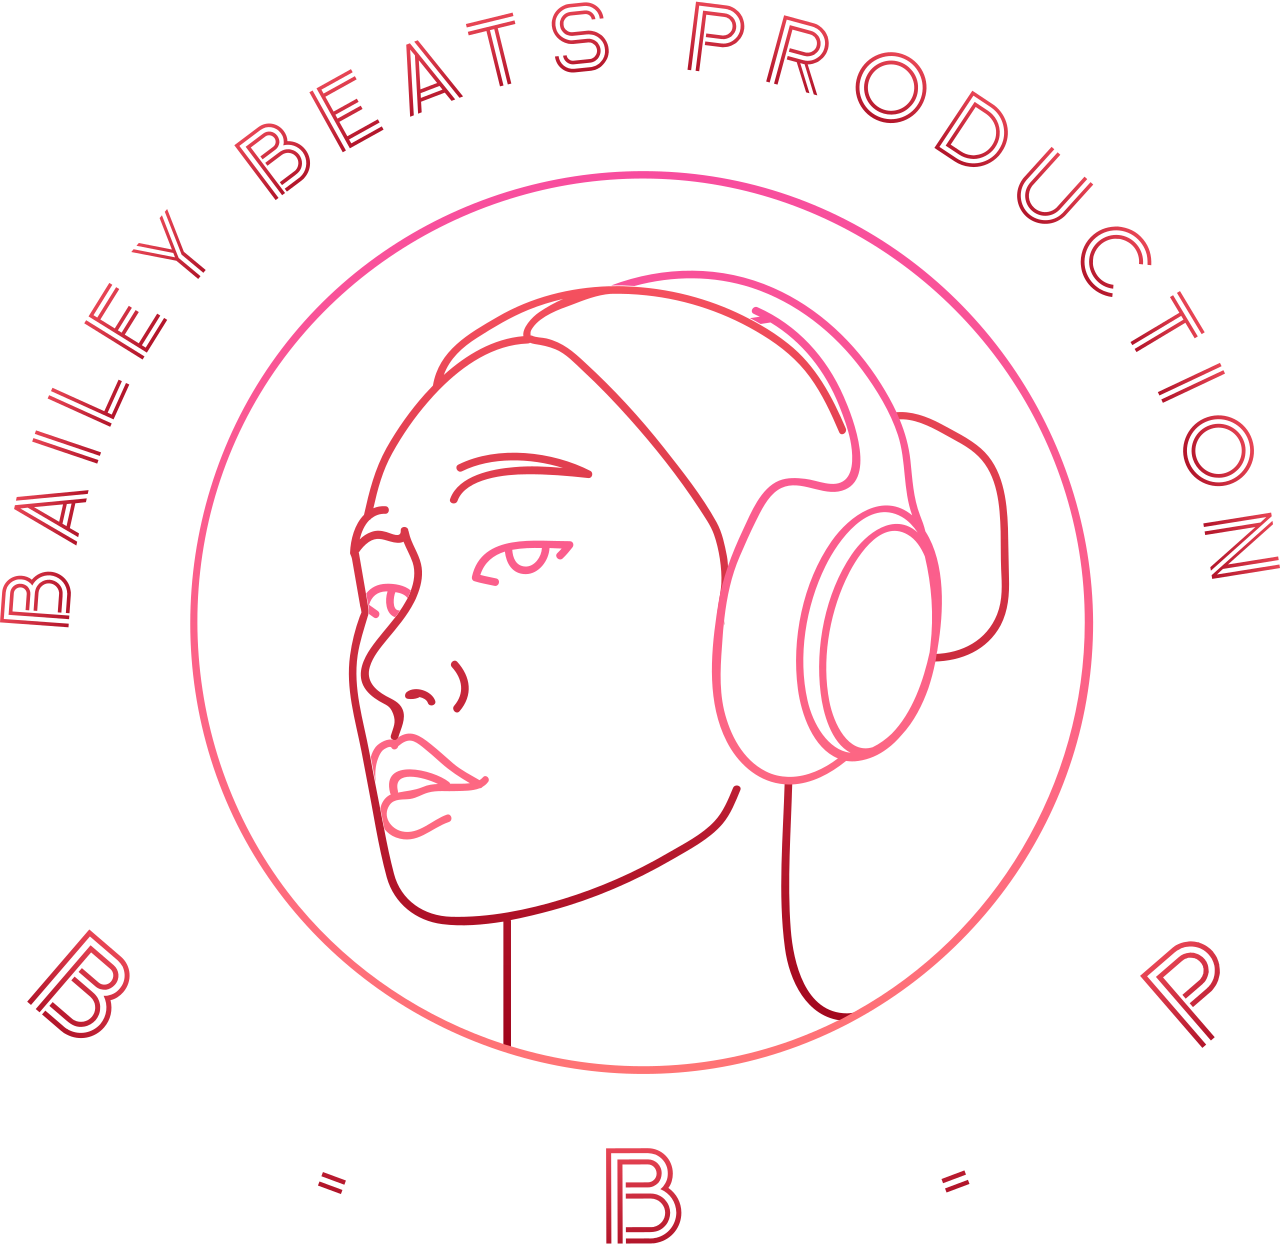 BAILEY BEATS PRODUCTION 's logo